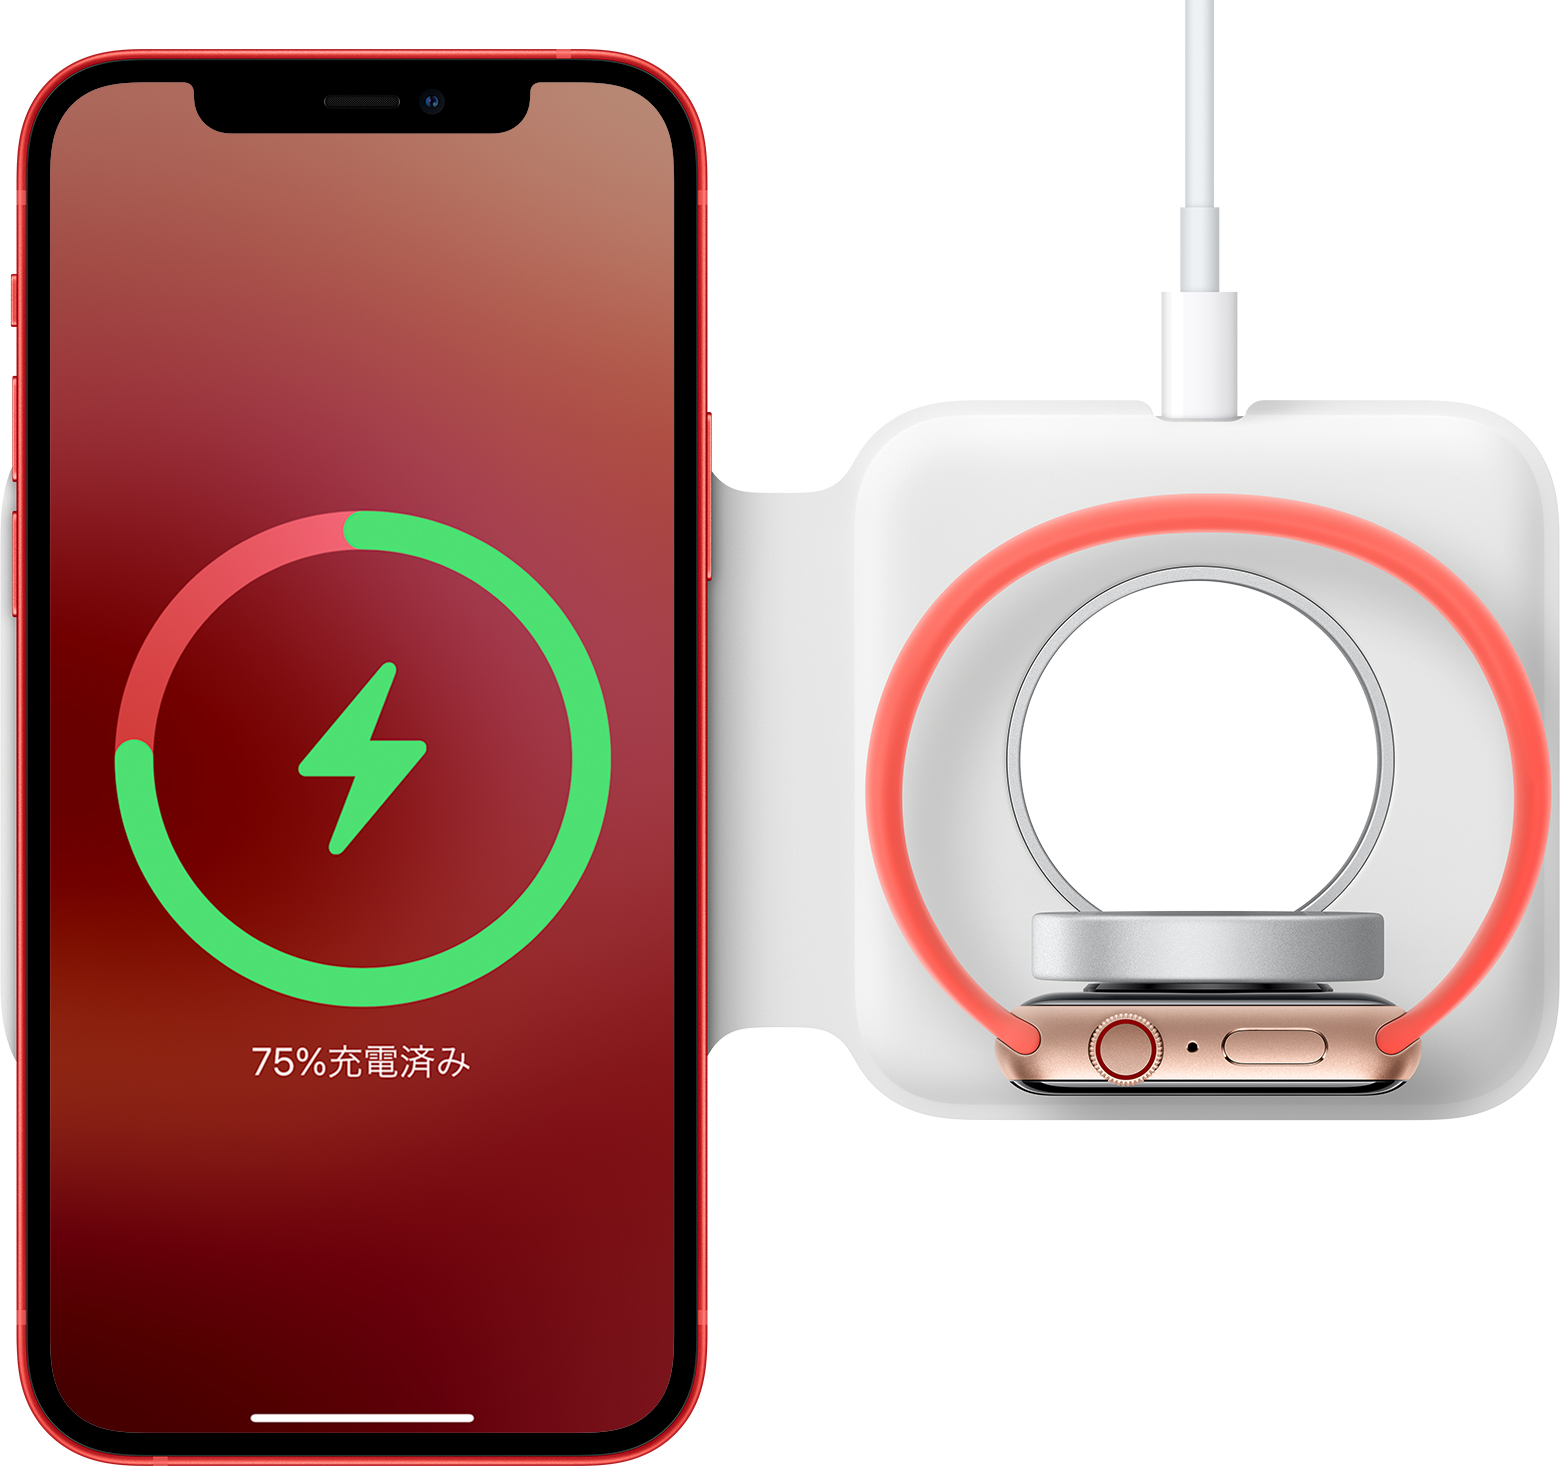 MagSafe デュアル充電パッドを上向きに置いて iPhone と Apple Watch を充電しているところ